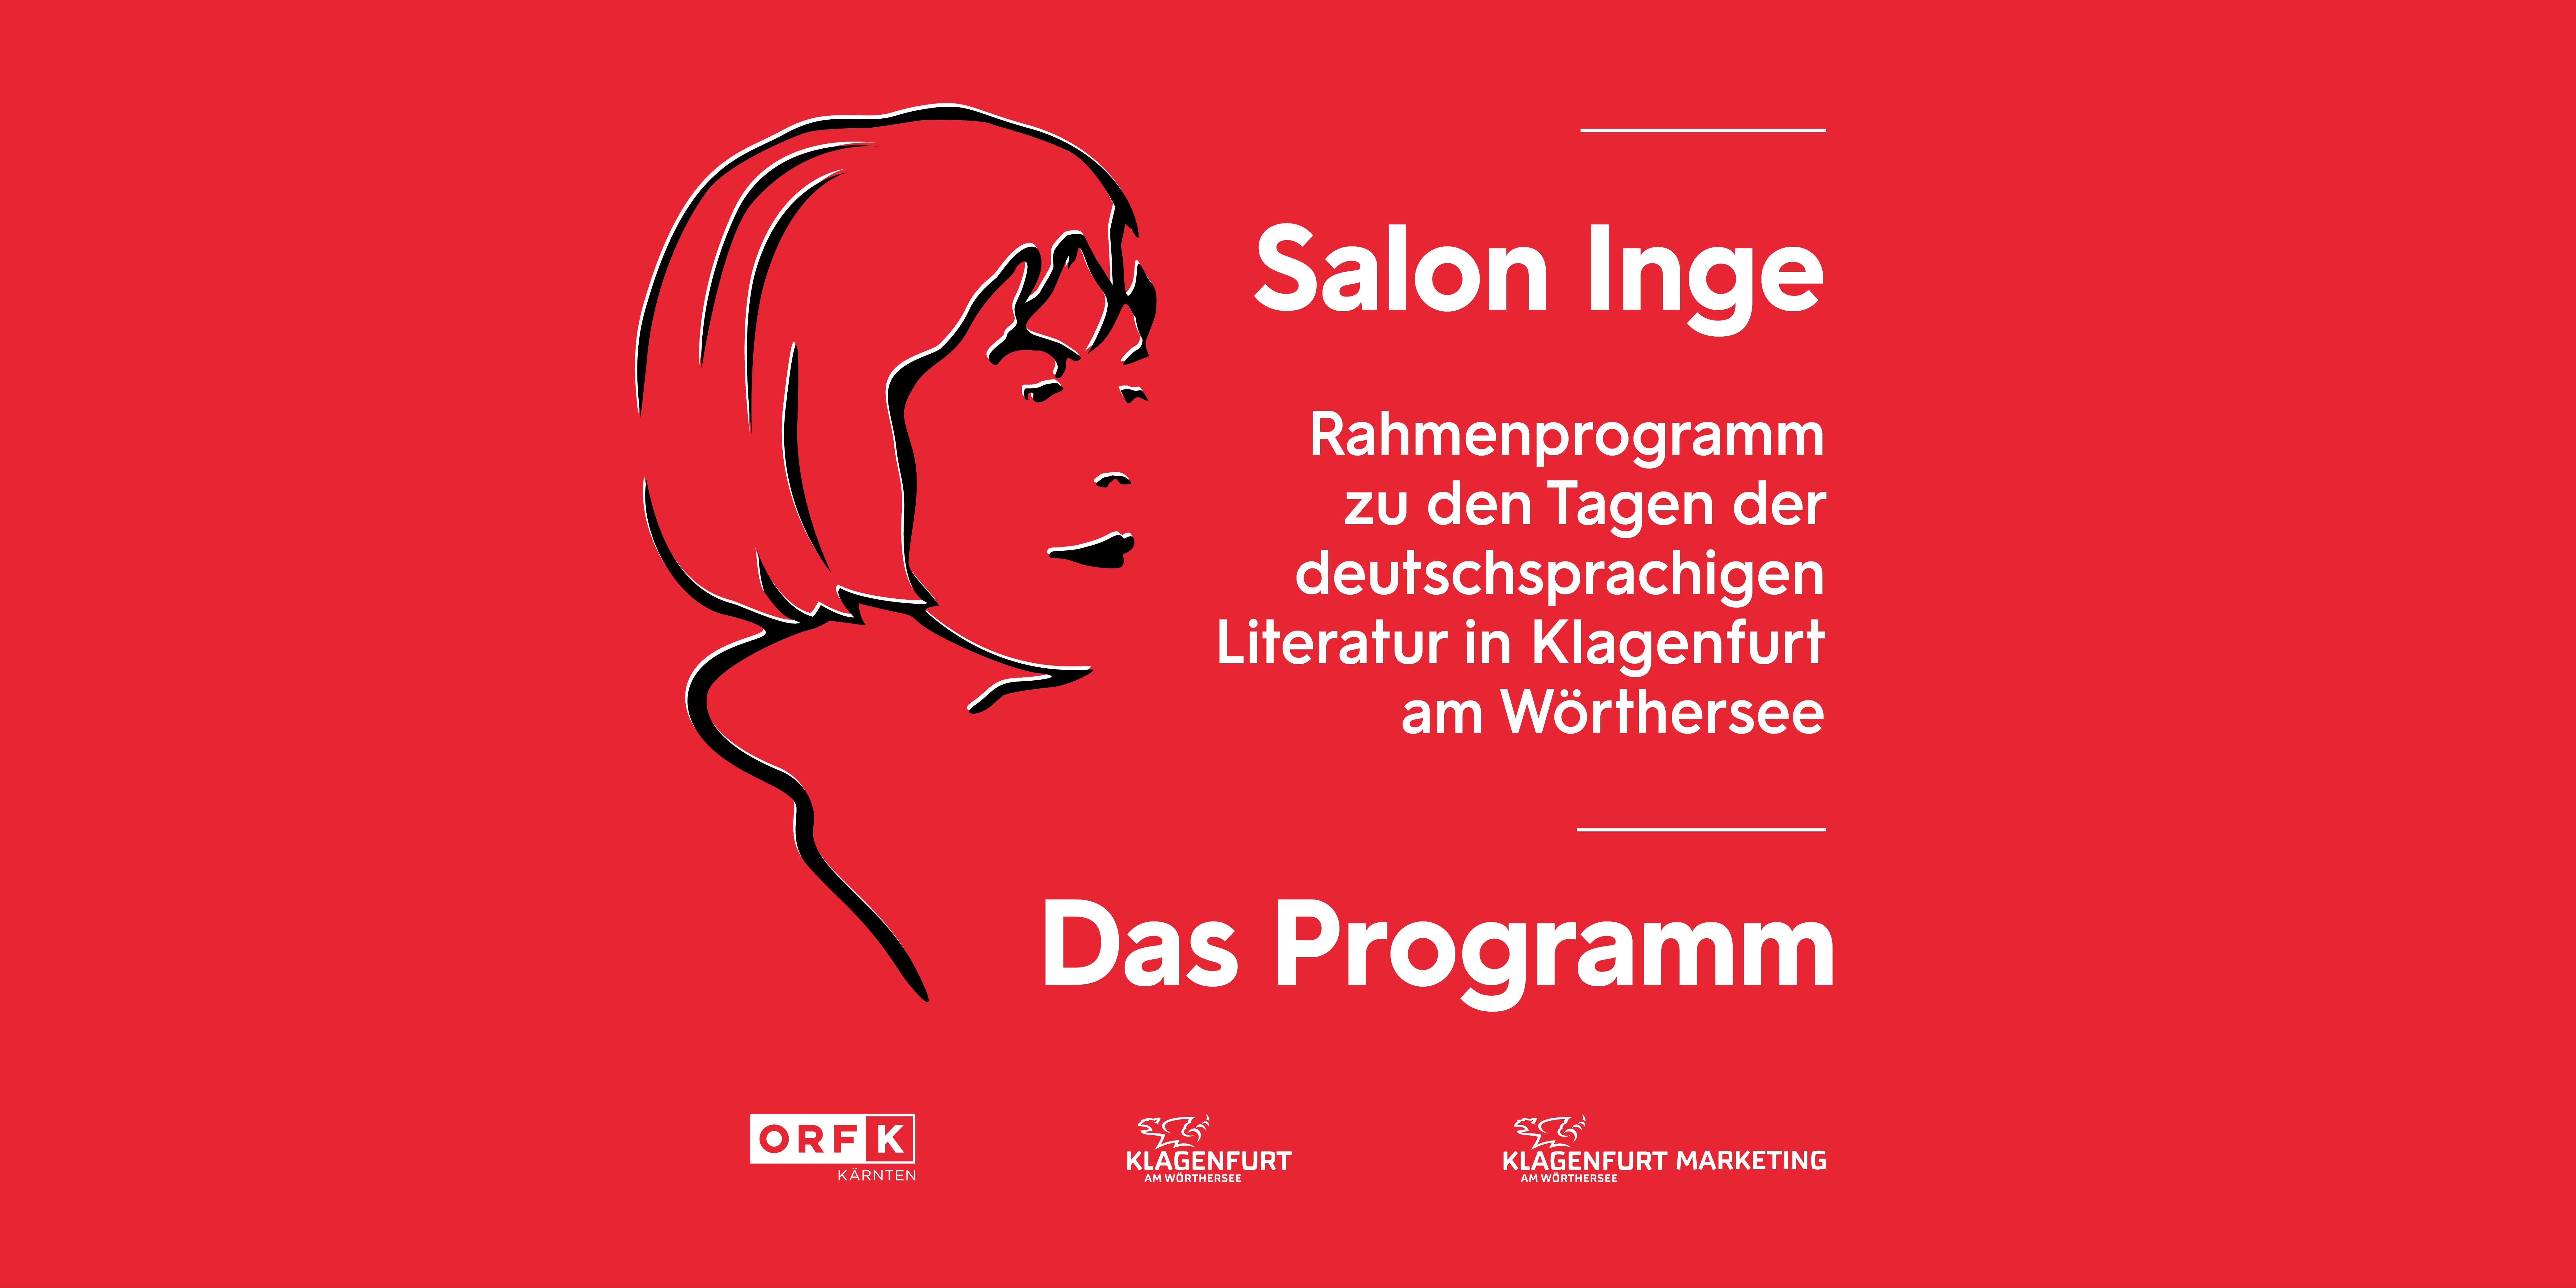 Salon Inge - Das Programm